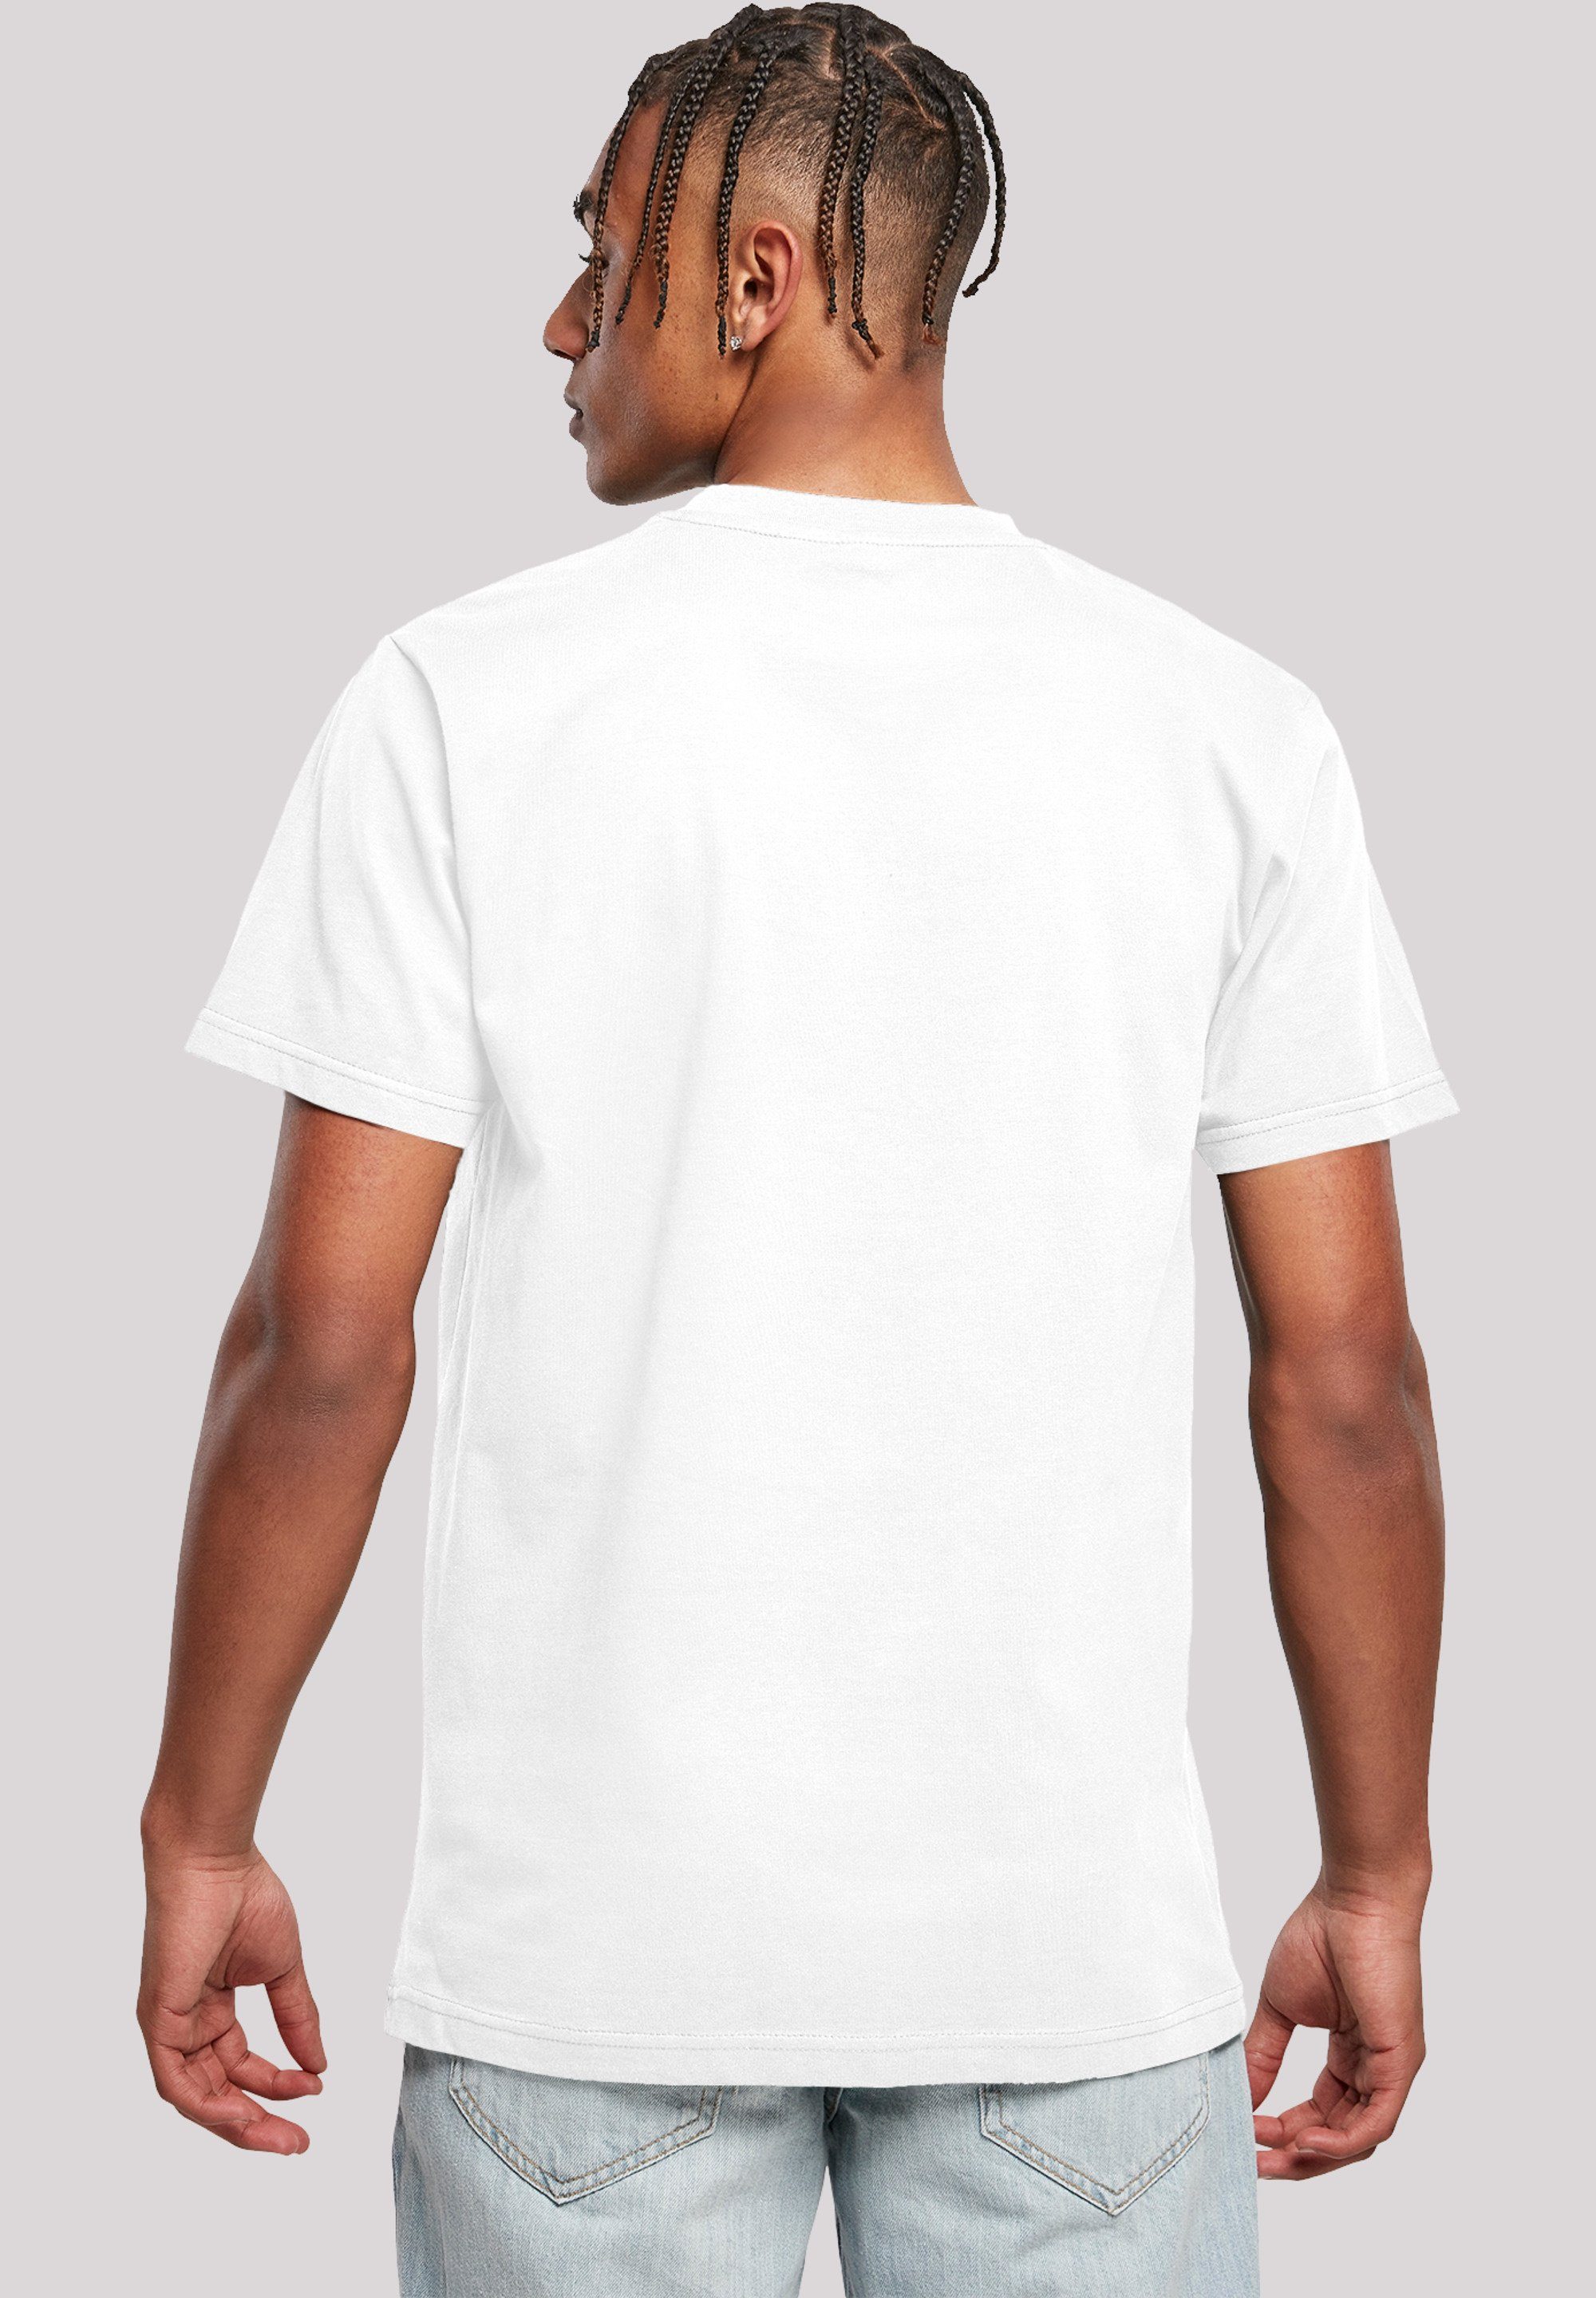 F4NT4STIC T-Shirt Tom Rocket Prank weiß Herren,Premium Jerry und Merch,Regular-Fit,Basic,Bedruckt